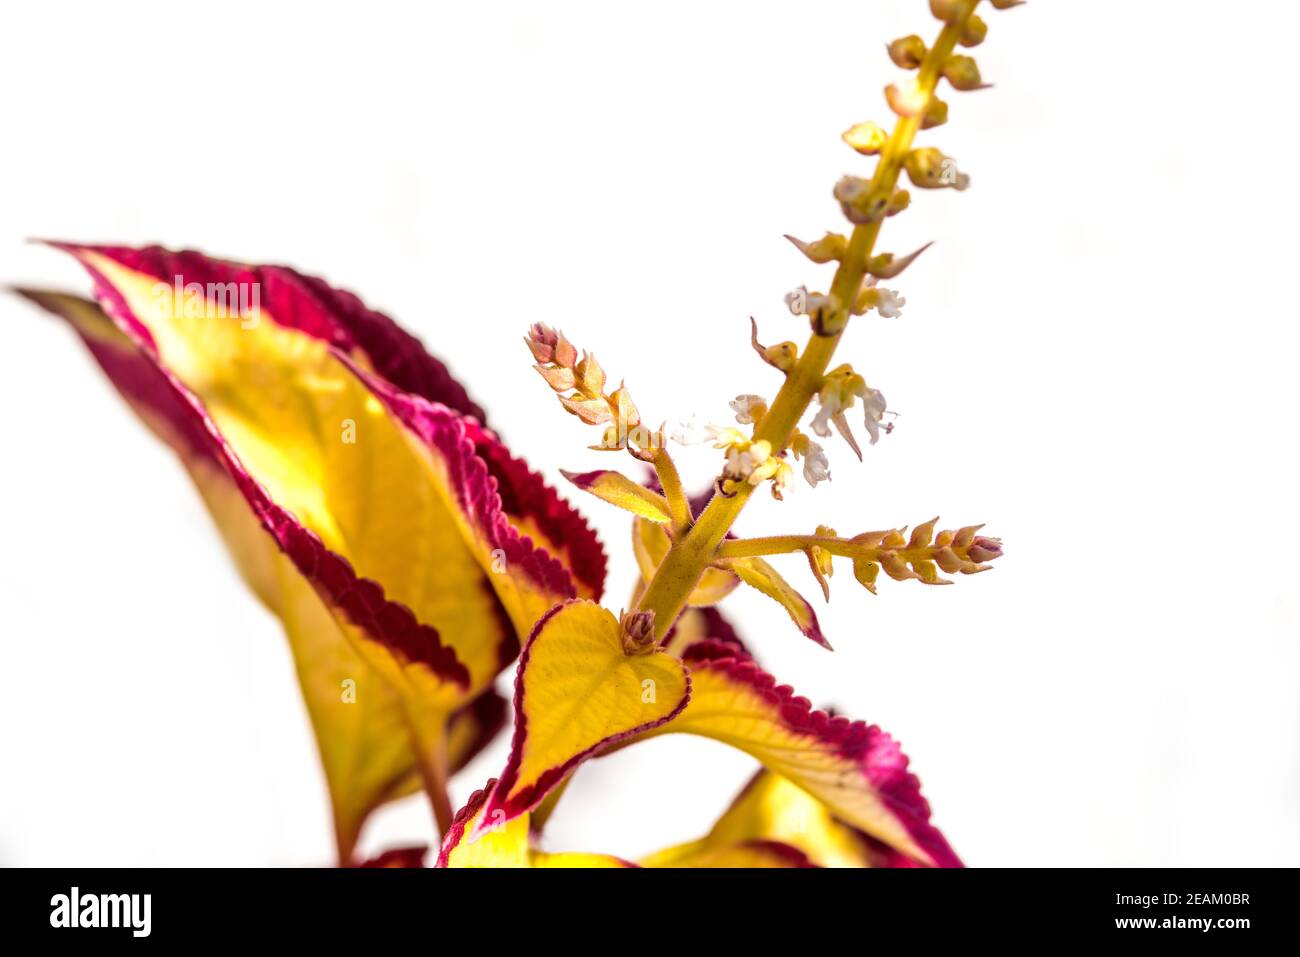 coleus, ornamental plant in a closeup Stock Photo